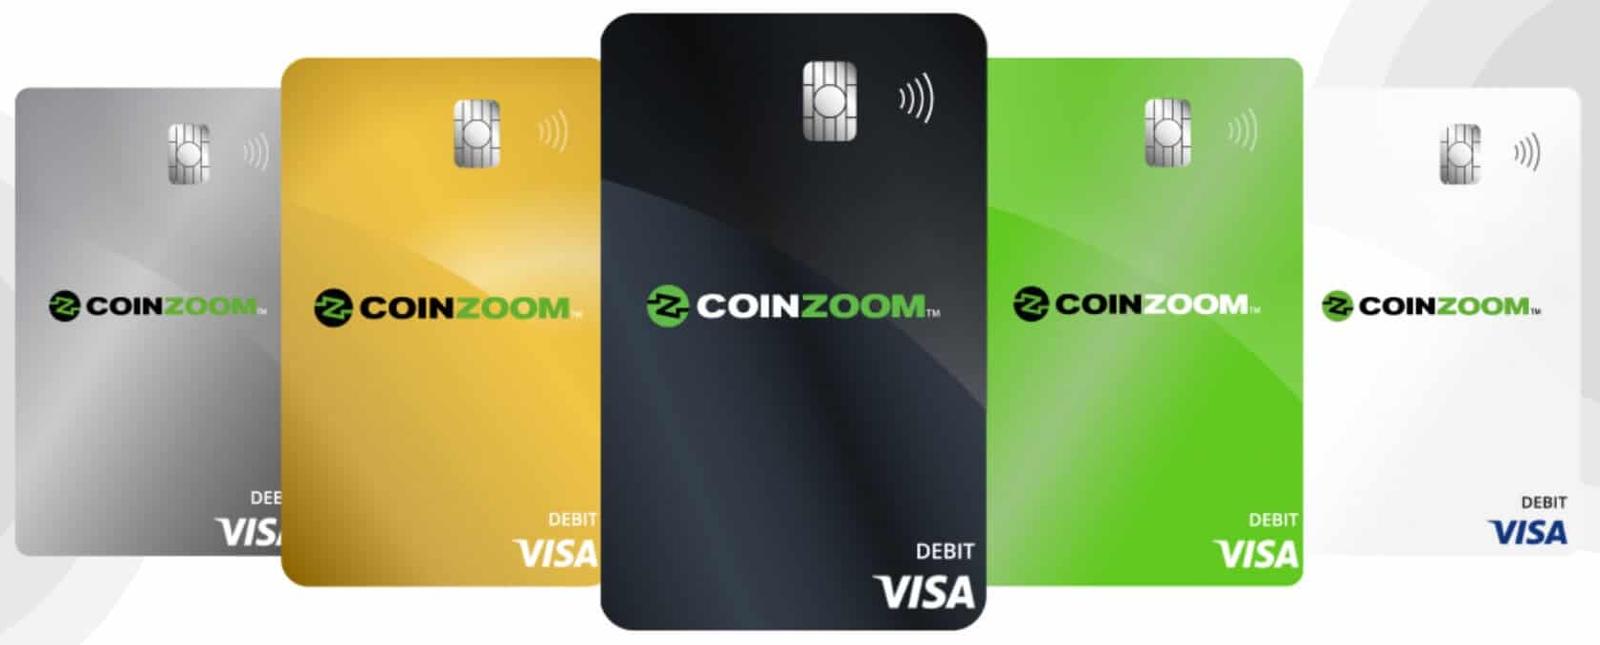 CoinZoom Debit Card